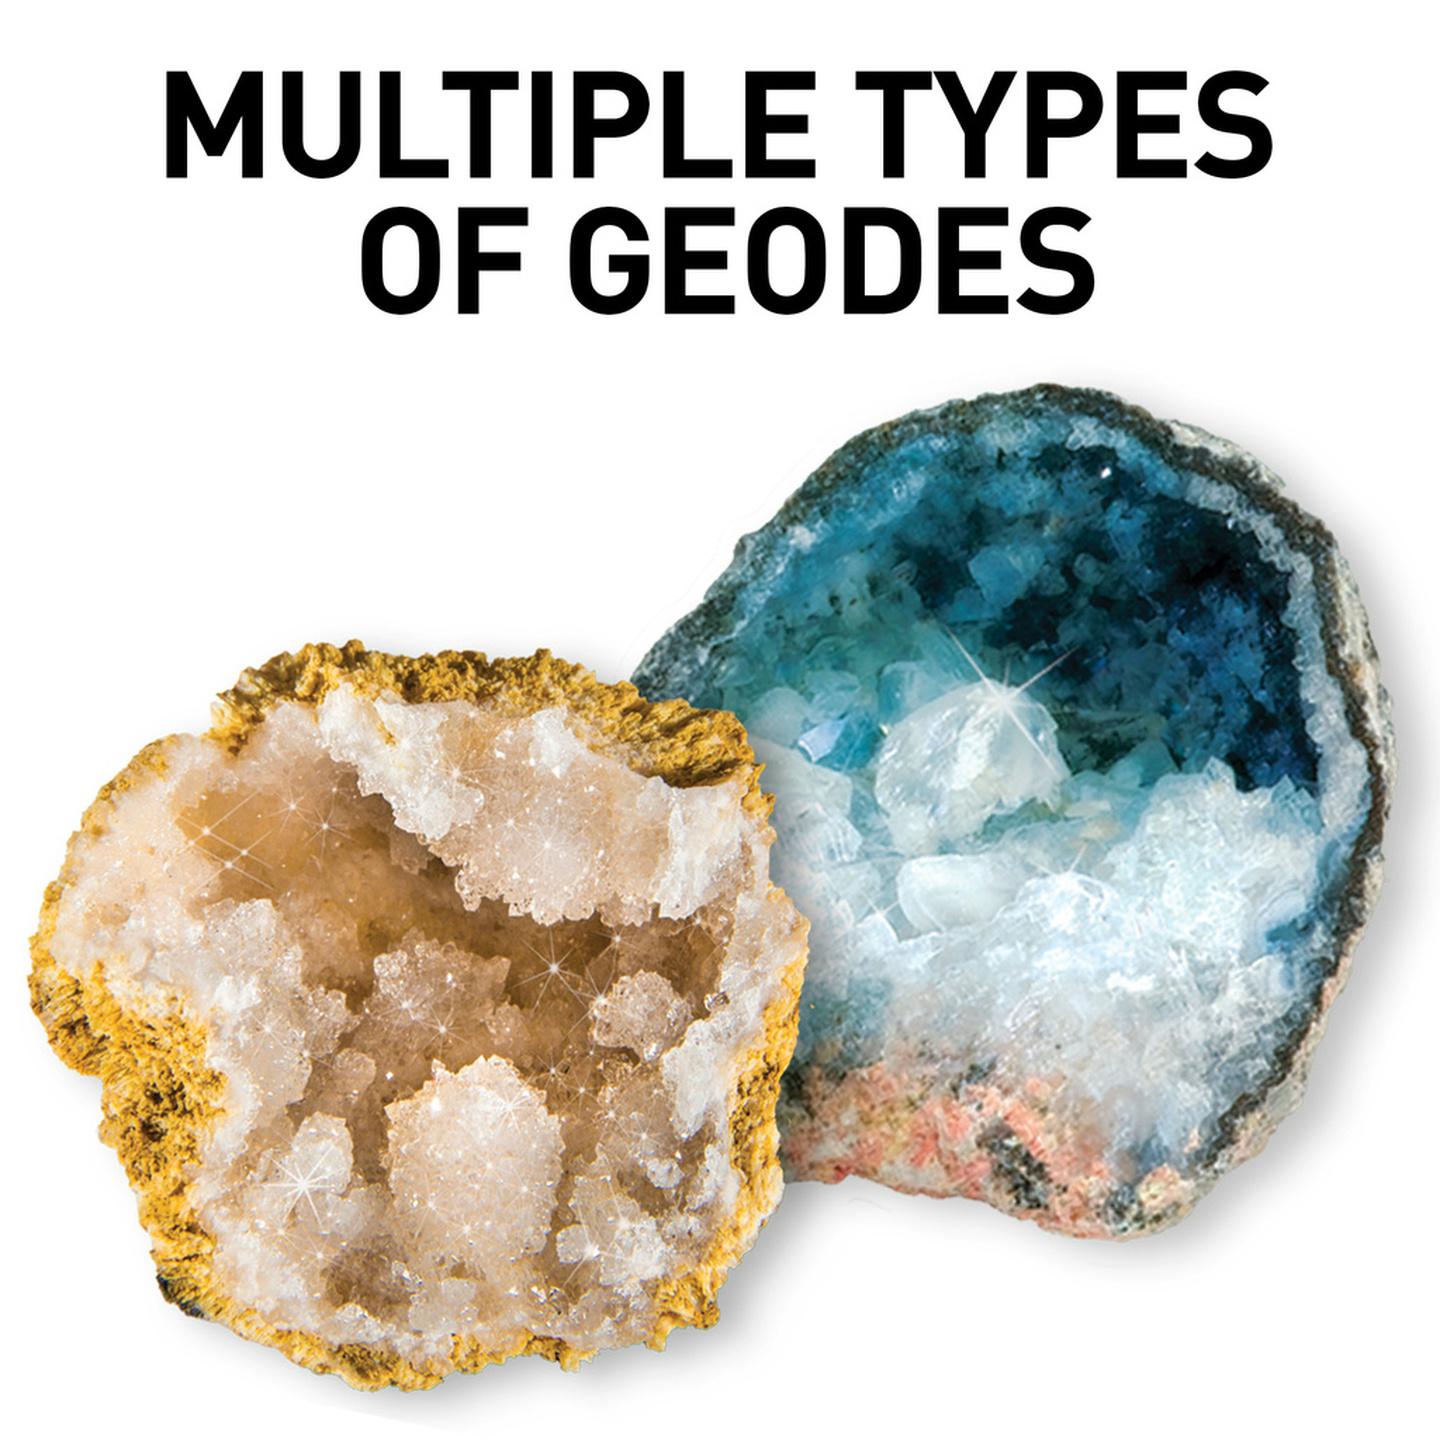 Science Kit - Break open 2 Real Geodes